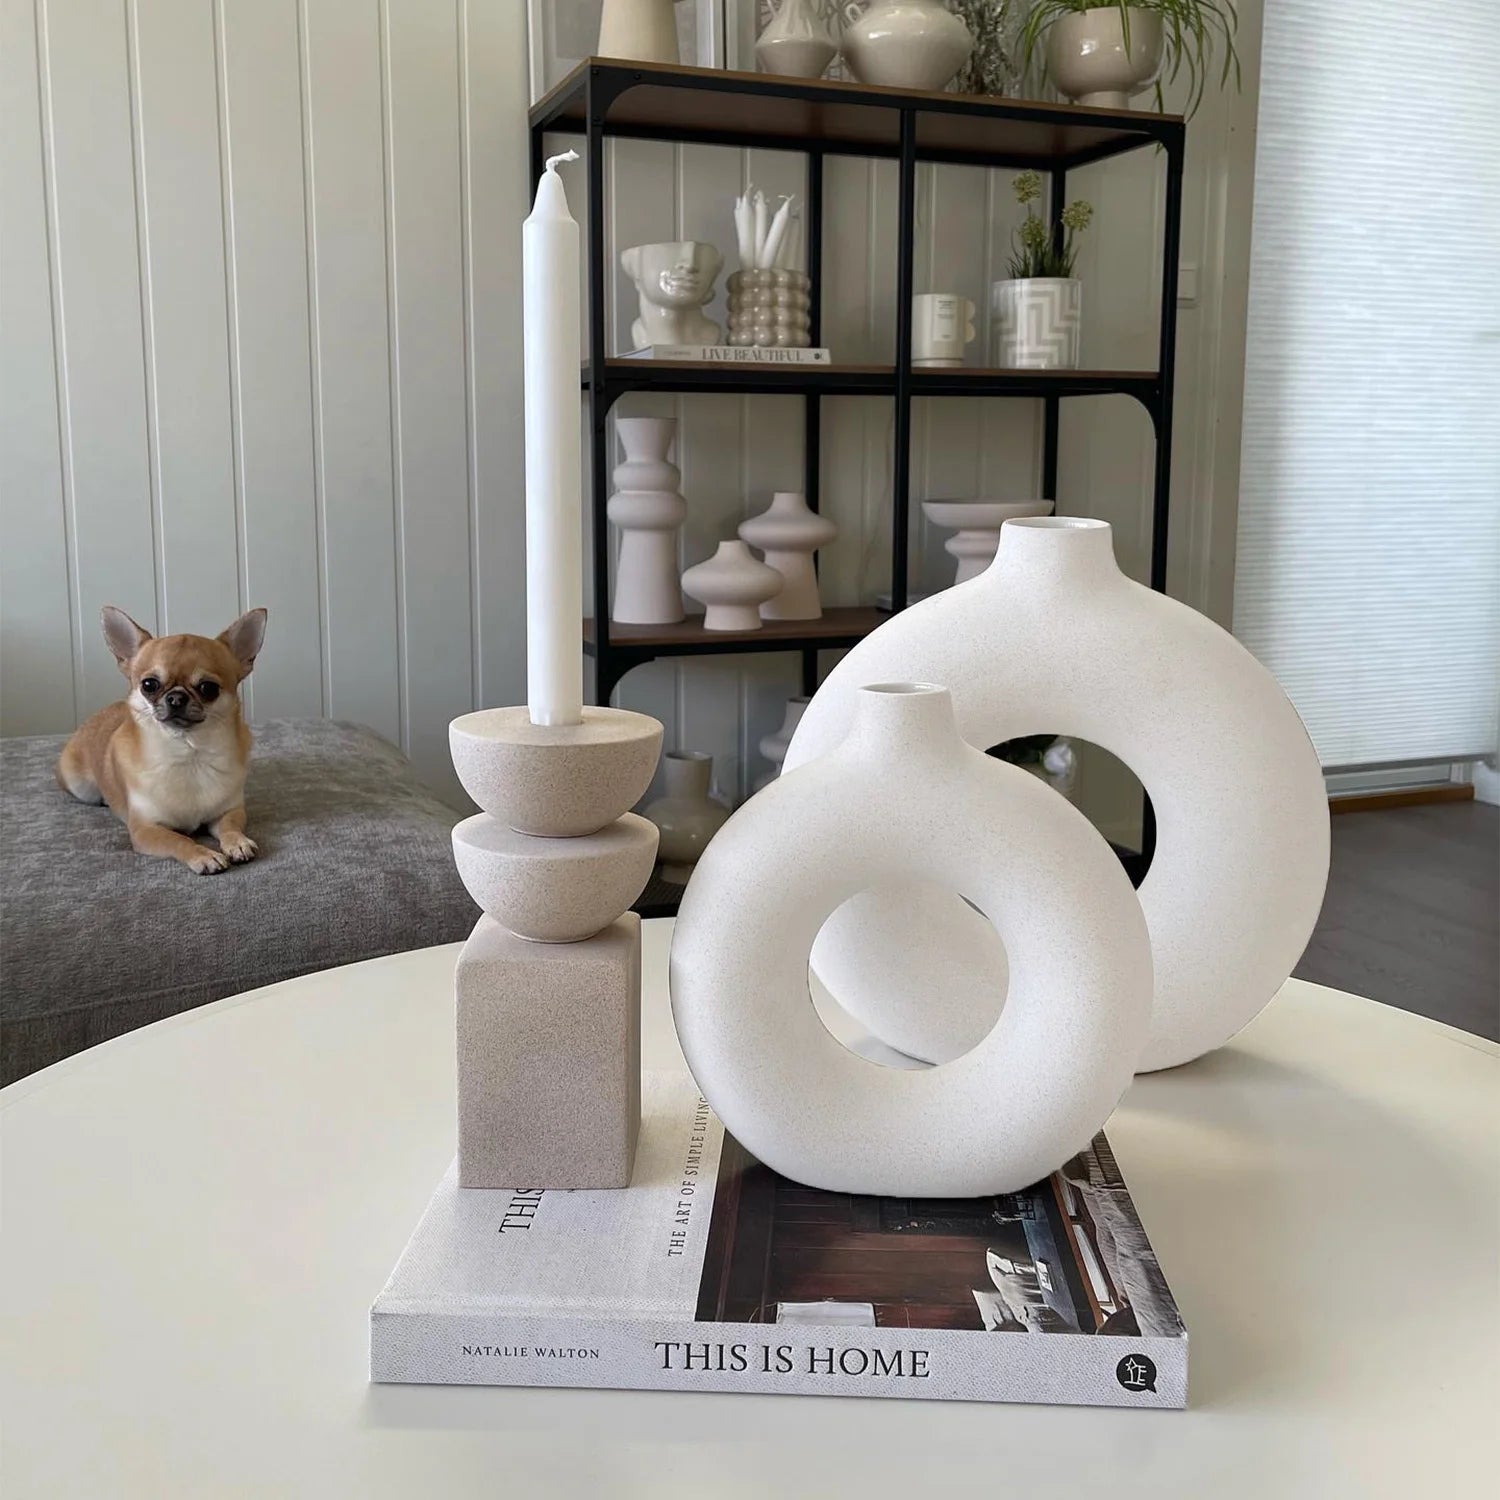 Ceramic Vases for Home Decor, Set of 2 Dount Vases, Modern Vase, White Vases, Farmhouse Vase, Decorative Vase, round Boho Vase for Bookshelf, Mantel, Table, Fireplace Decor - Design By Technique